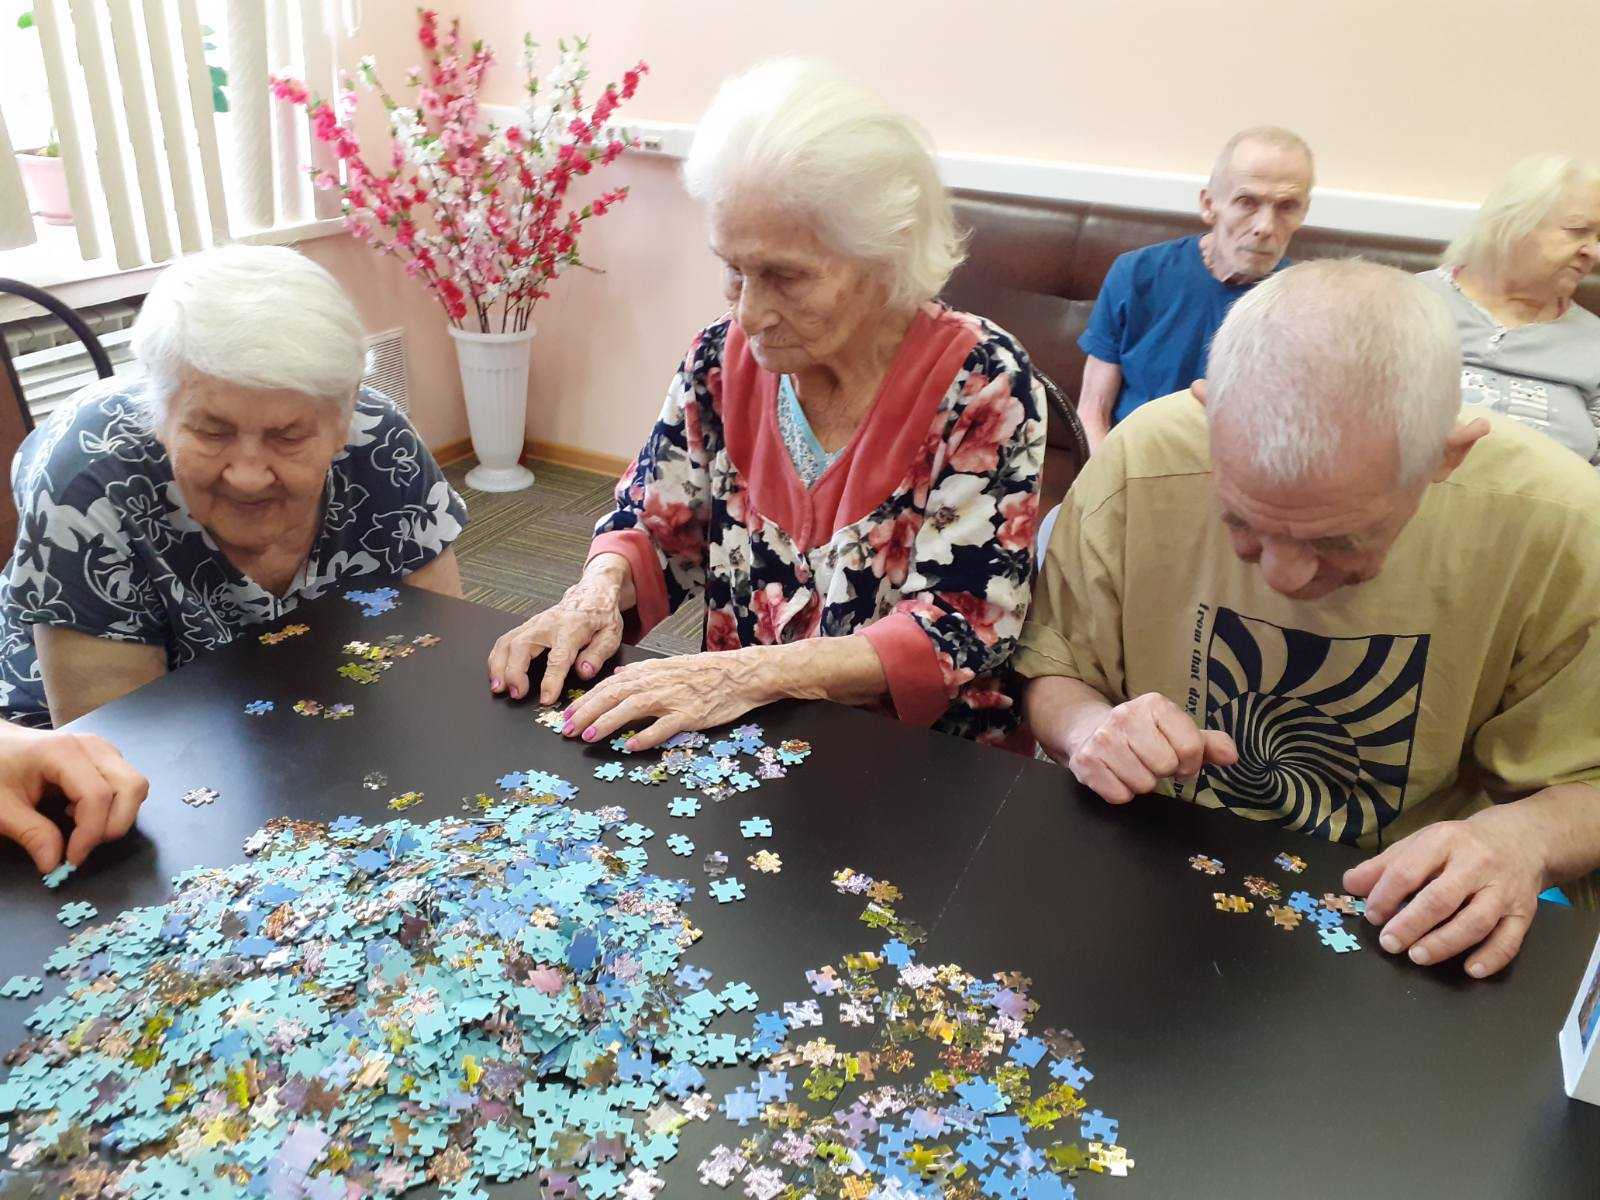 Игры на день пожилого человека: как организовать интересные конкурсы для пенсионеров